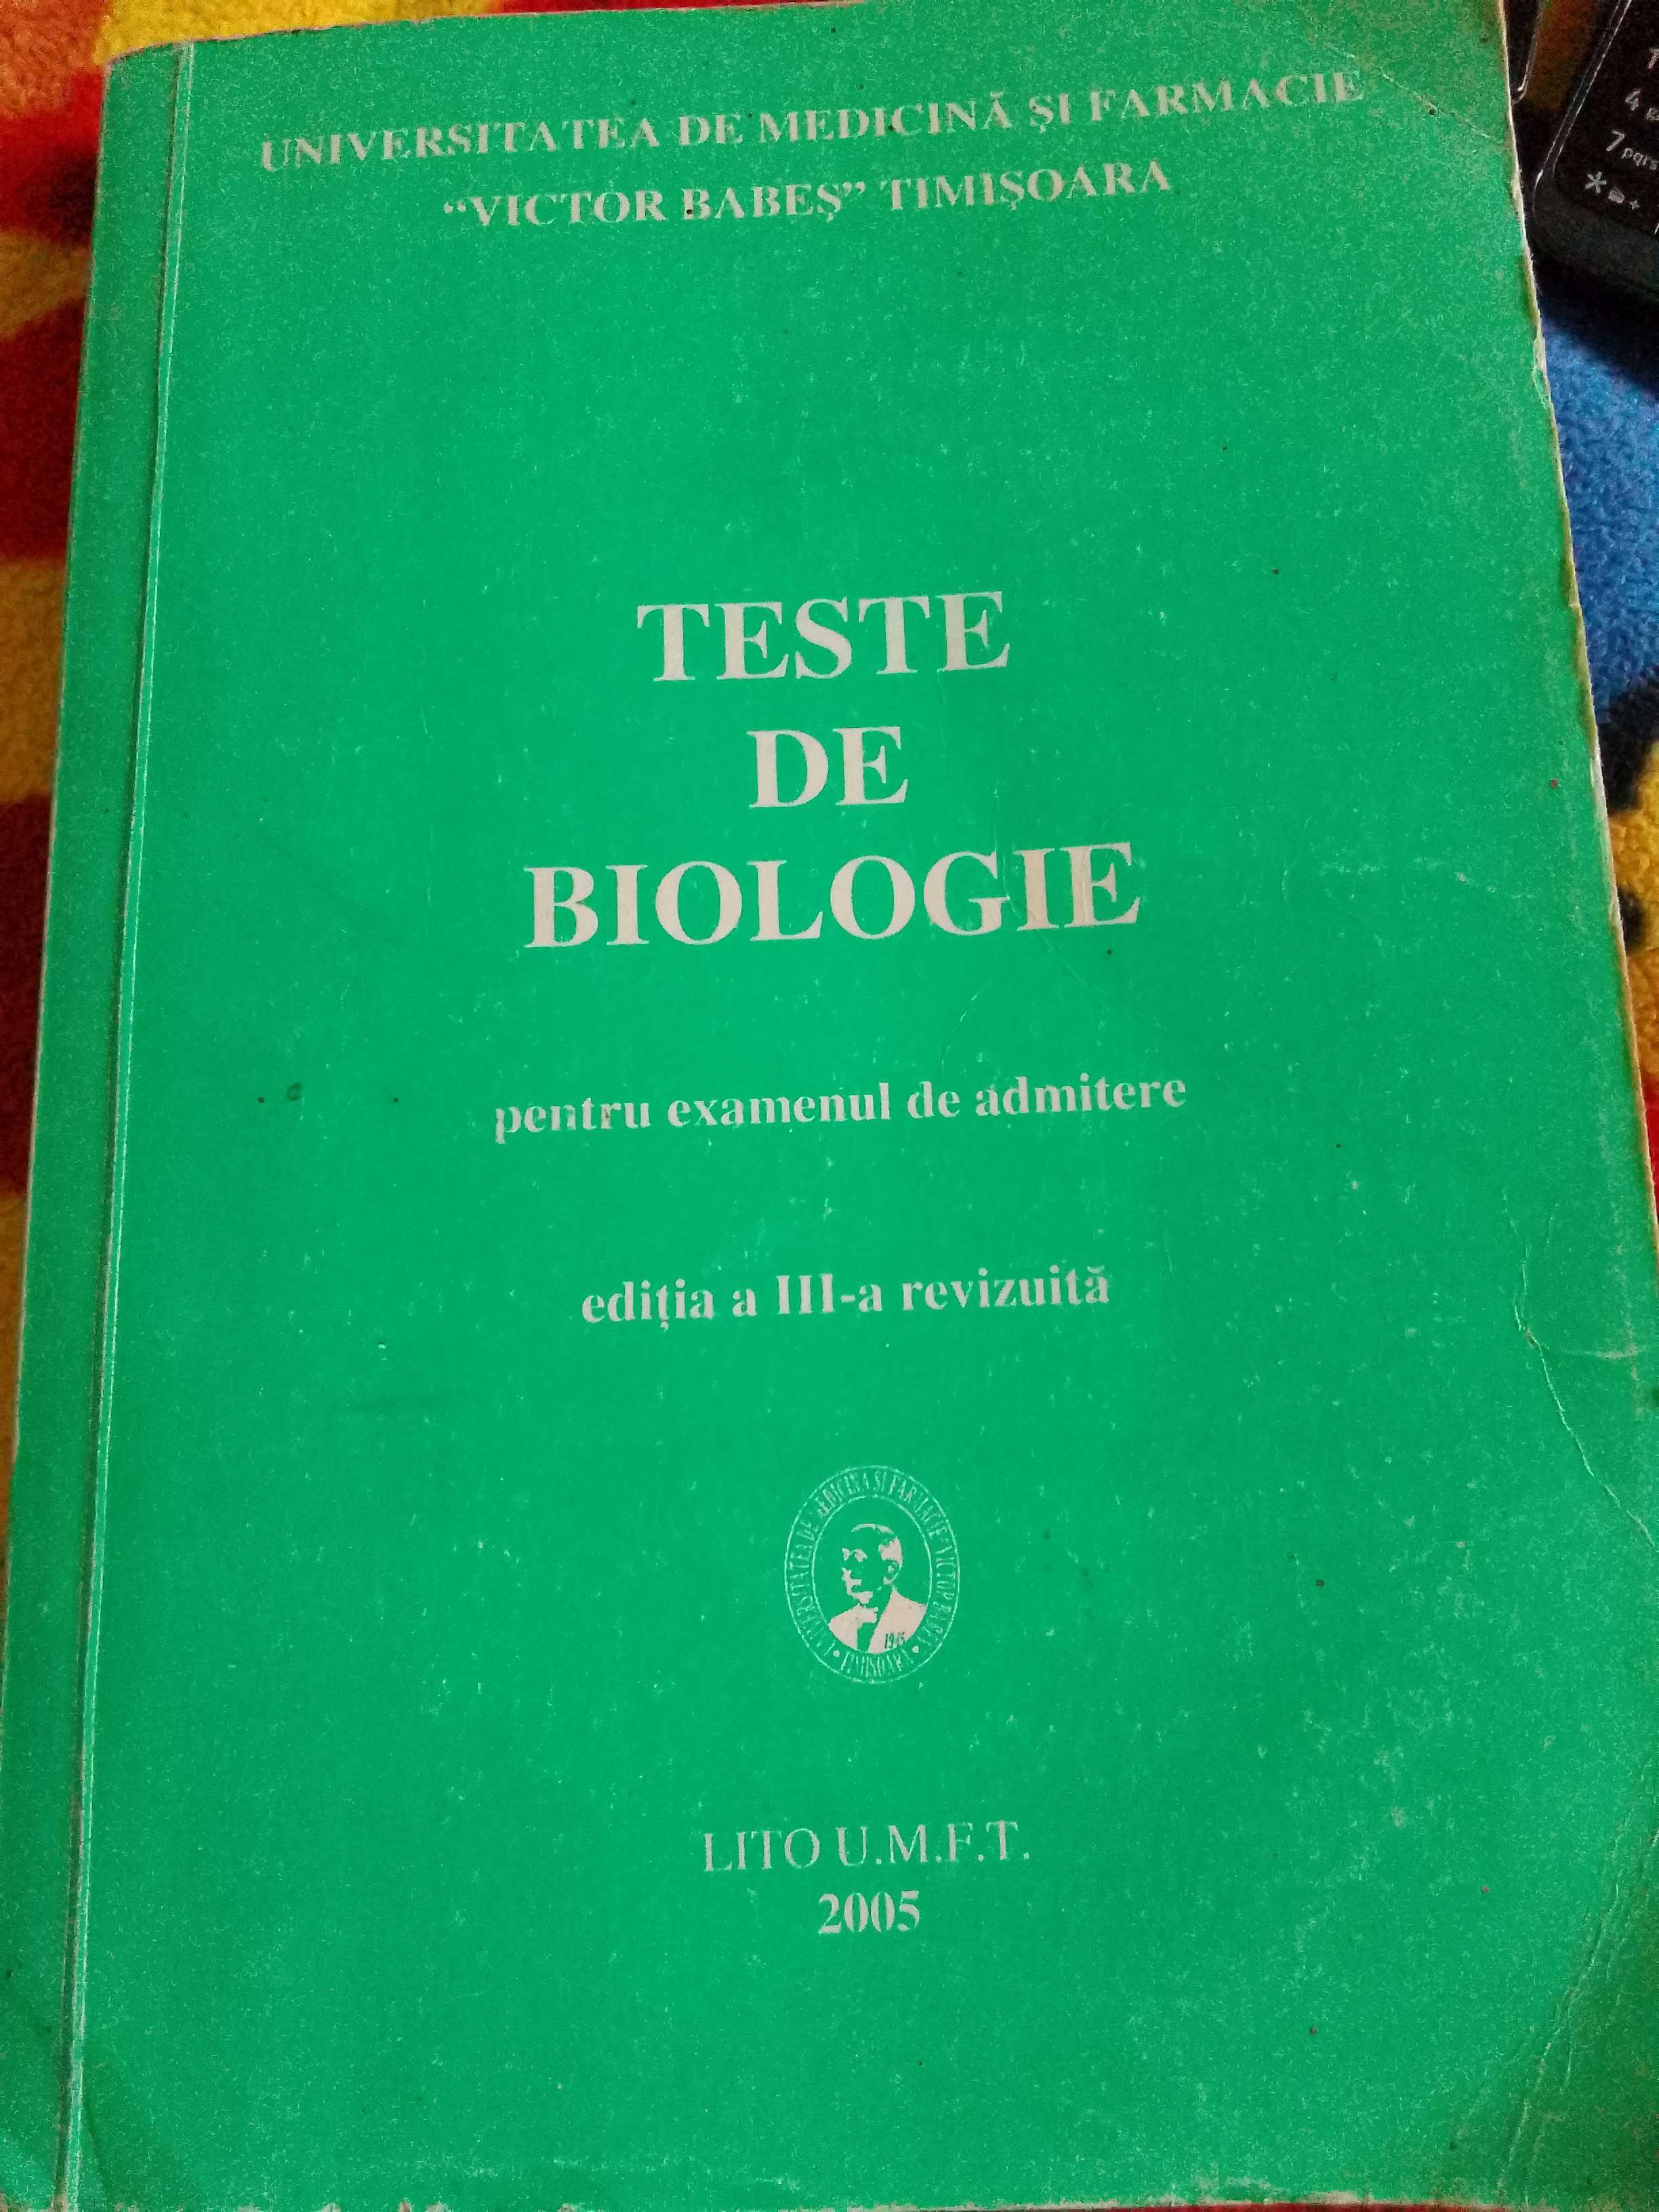 Vând carte Teste de biologie pt admitere medicina